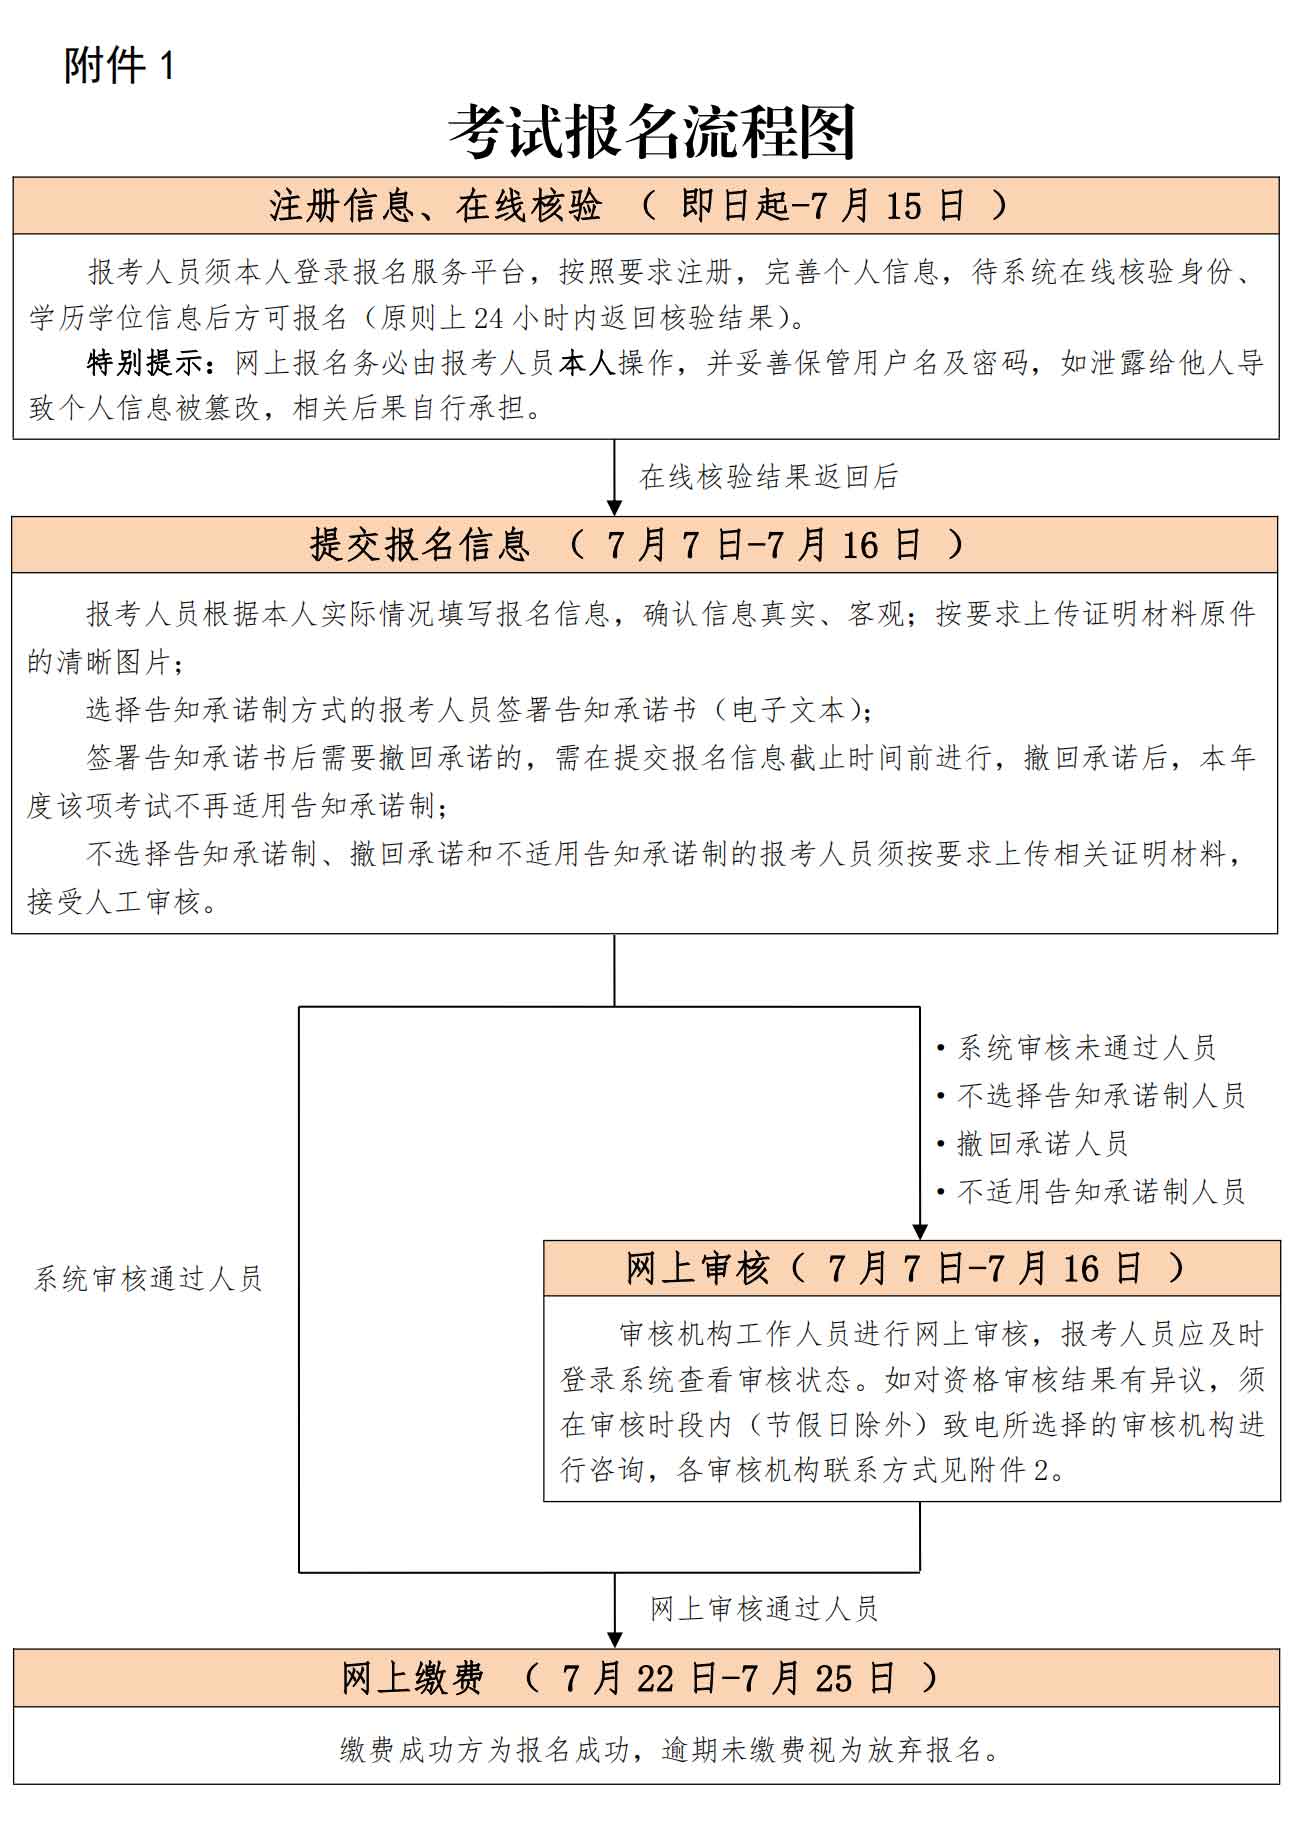 北京2021年度一级建造师资格考试报名工作的通知